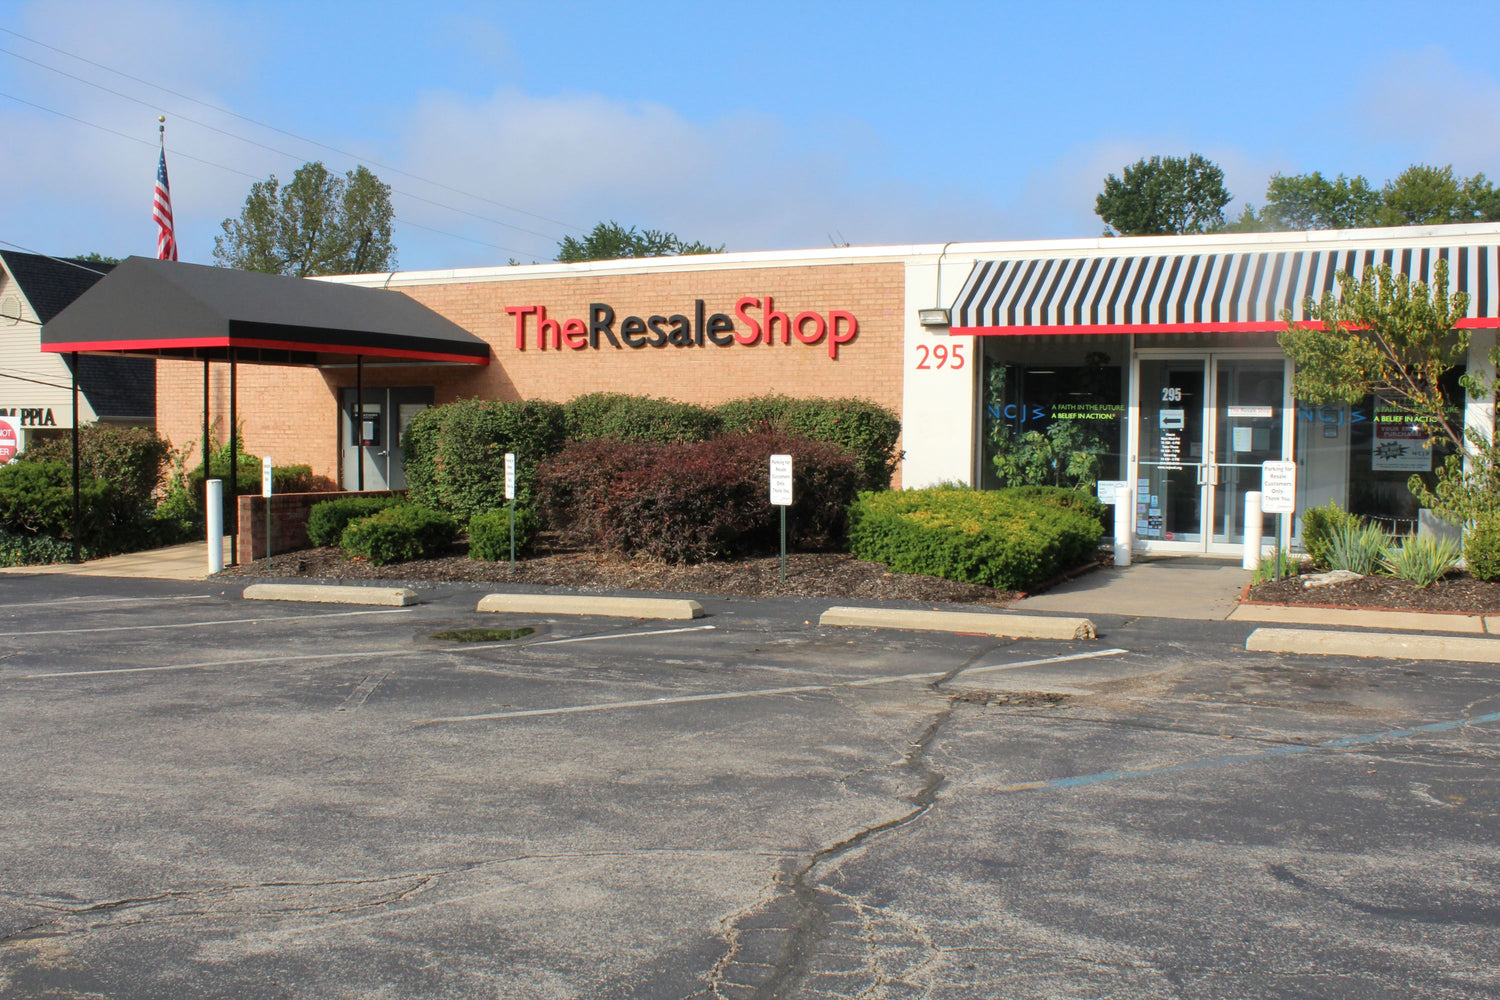 The Resale Shop